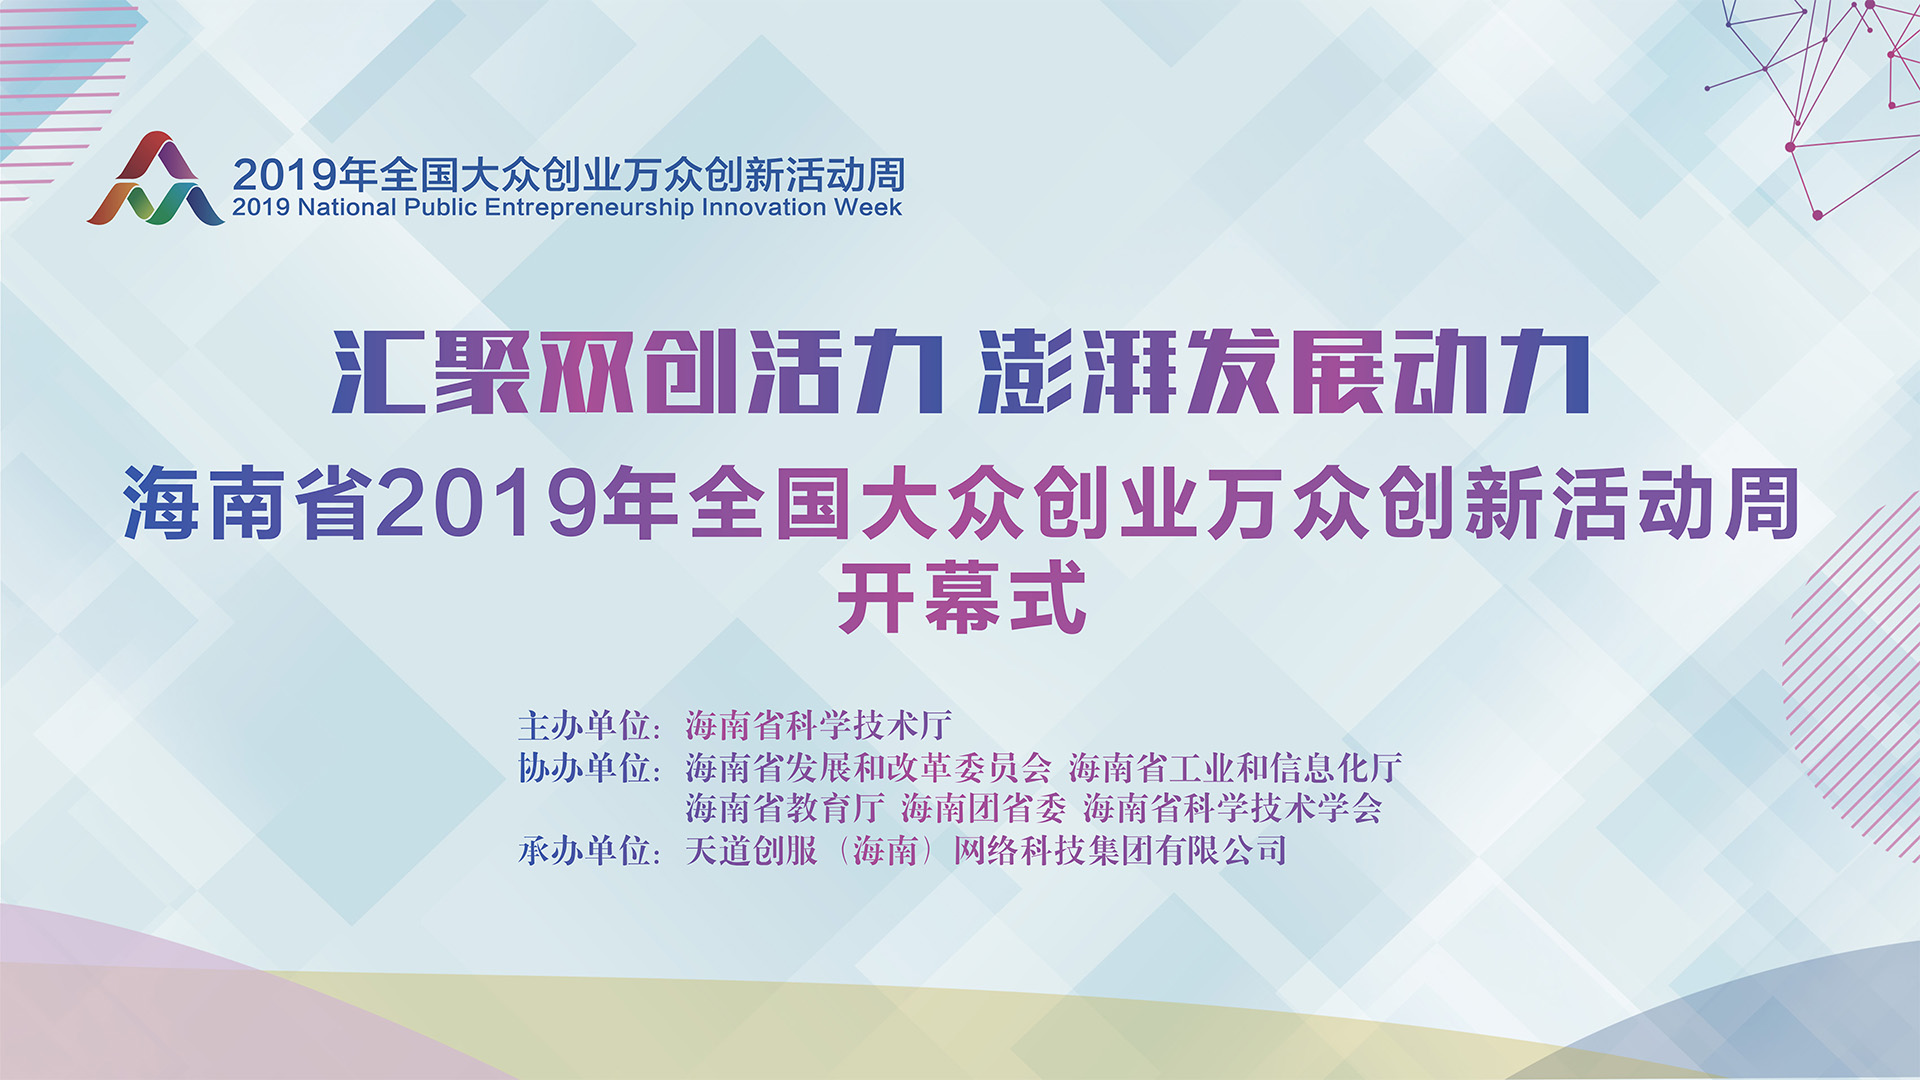 2019年全国大众创业万众创新活动周海南省系列活动开幕式